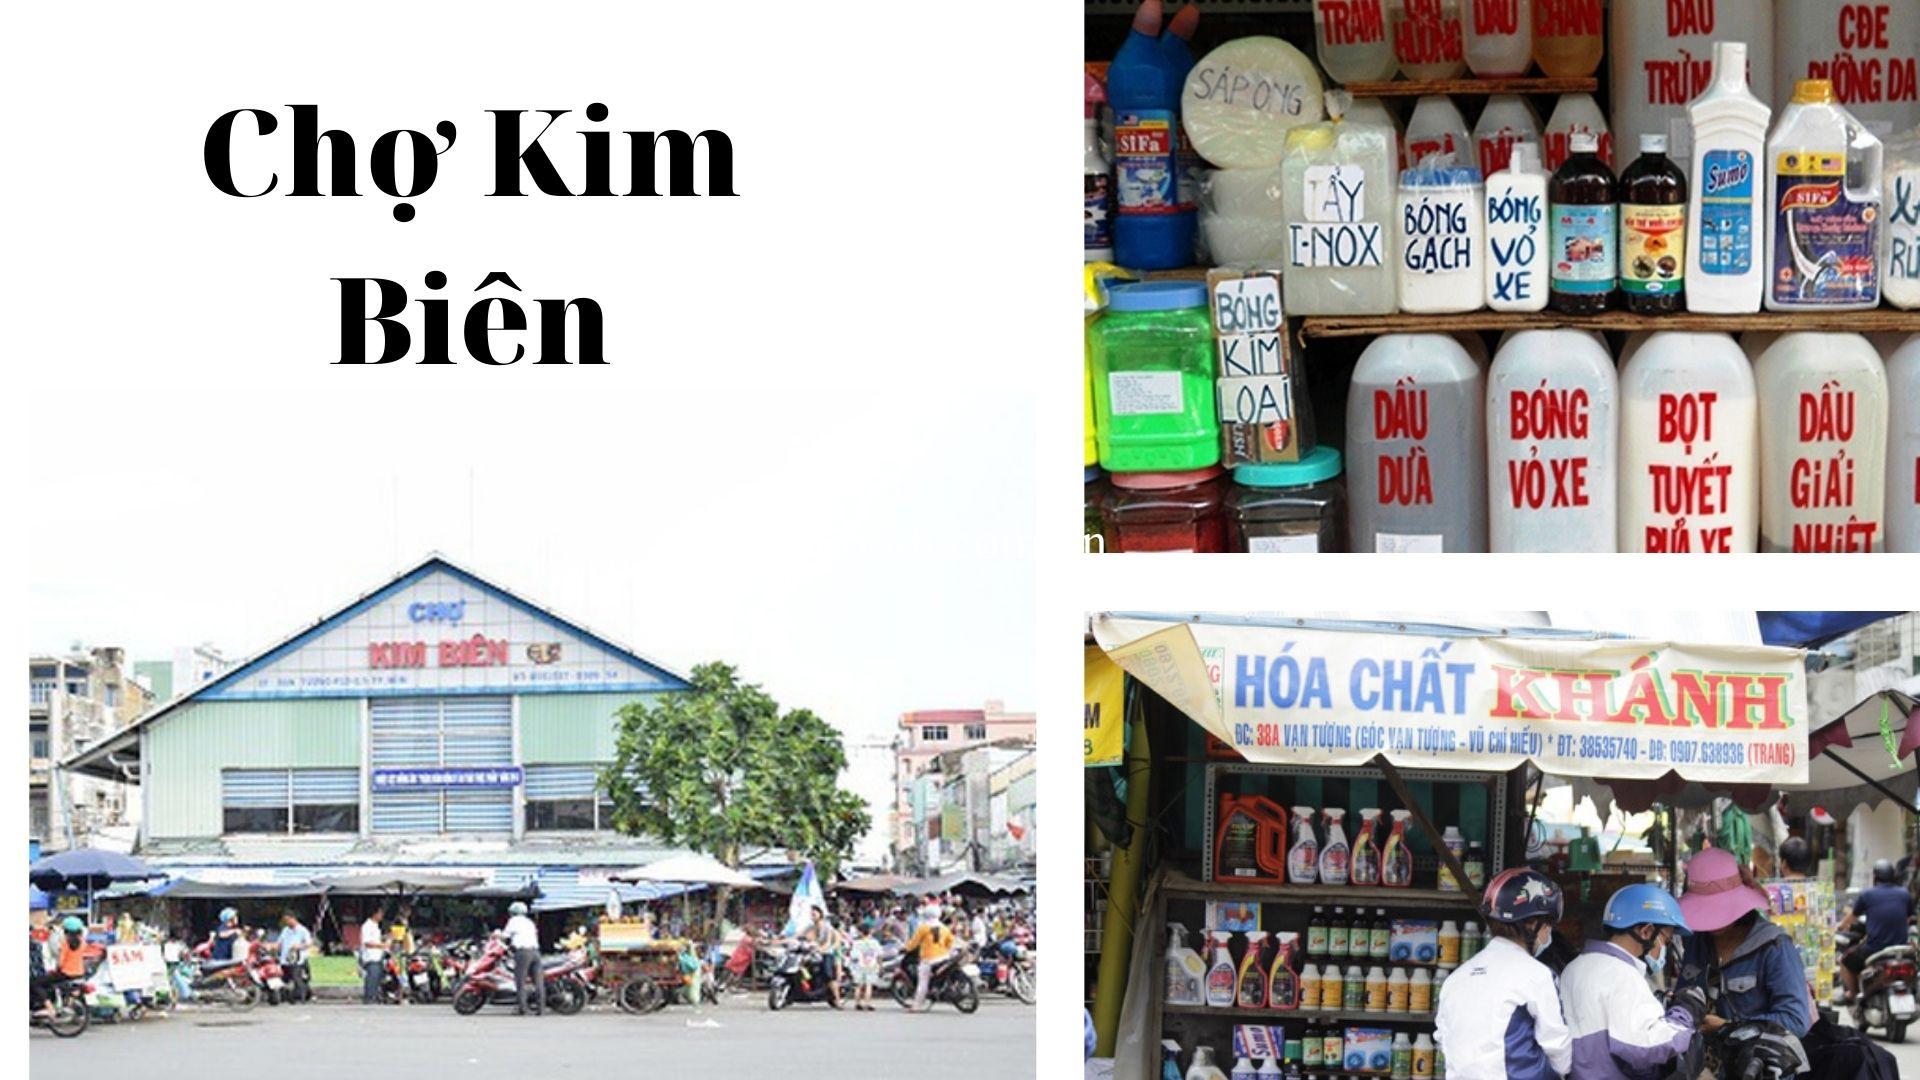 Top 20 Chợ gần đây ở Sài Gòn đang mở cửa nổi tiếng nhất để mua sắm